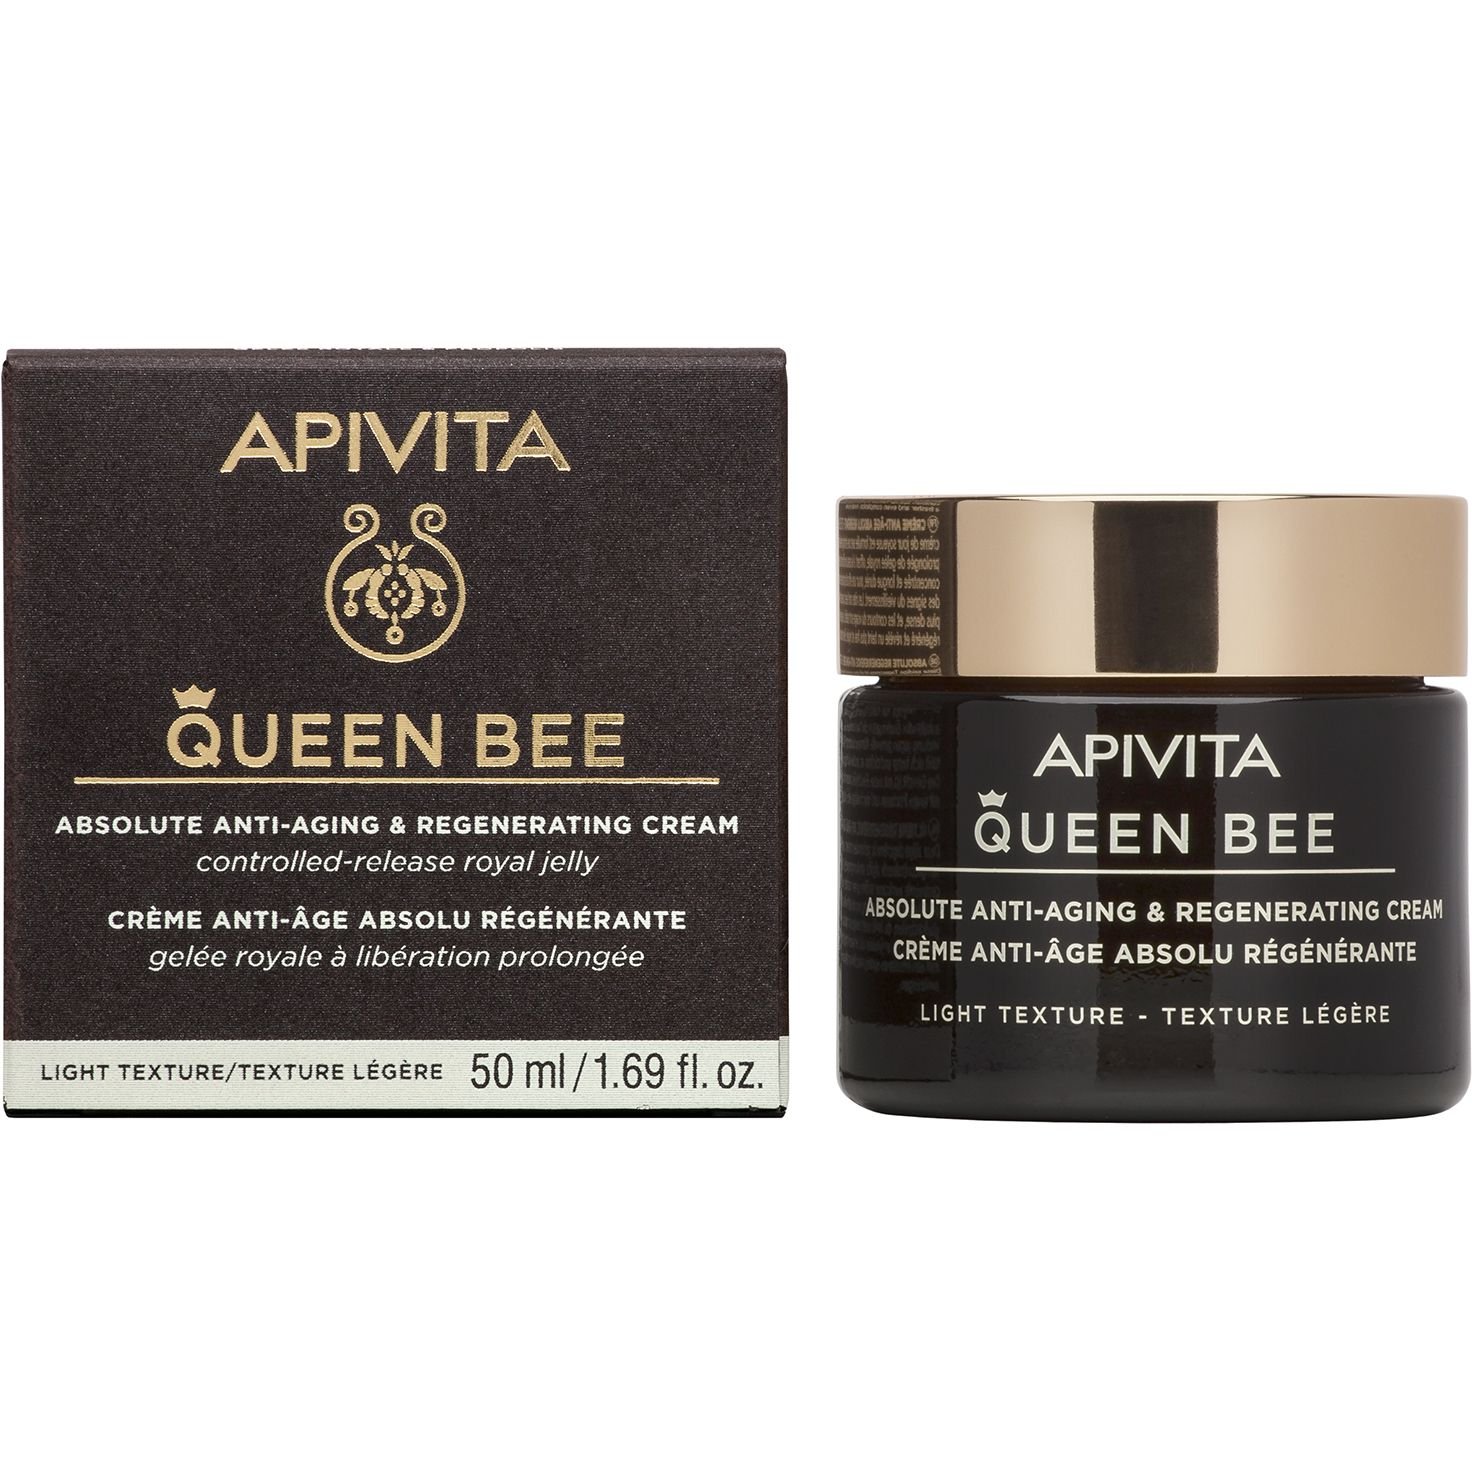 Крем легкой текстуры Apivita Queen Bee для комплексного антивозрастного и регенирирующего действия, 50 мл - фото 1